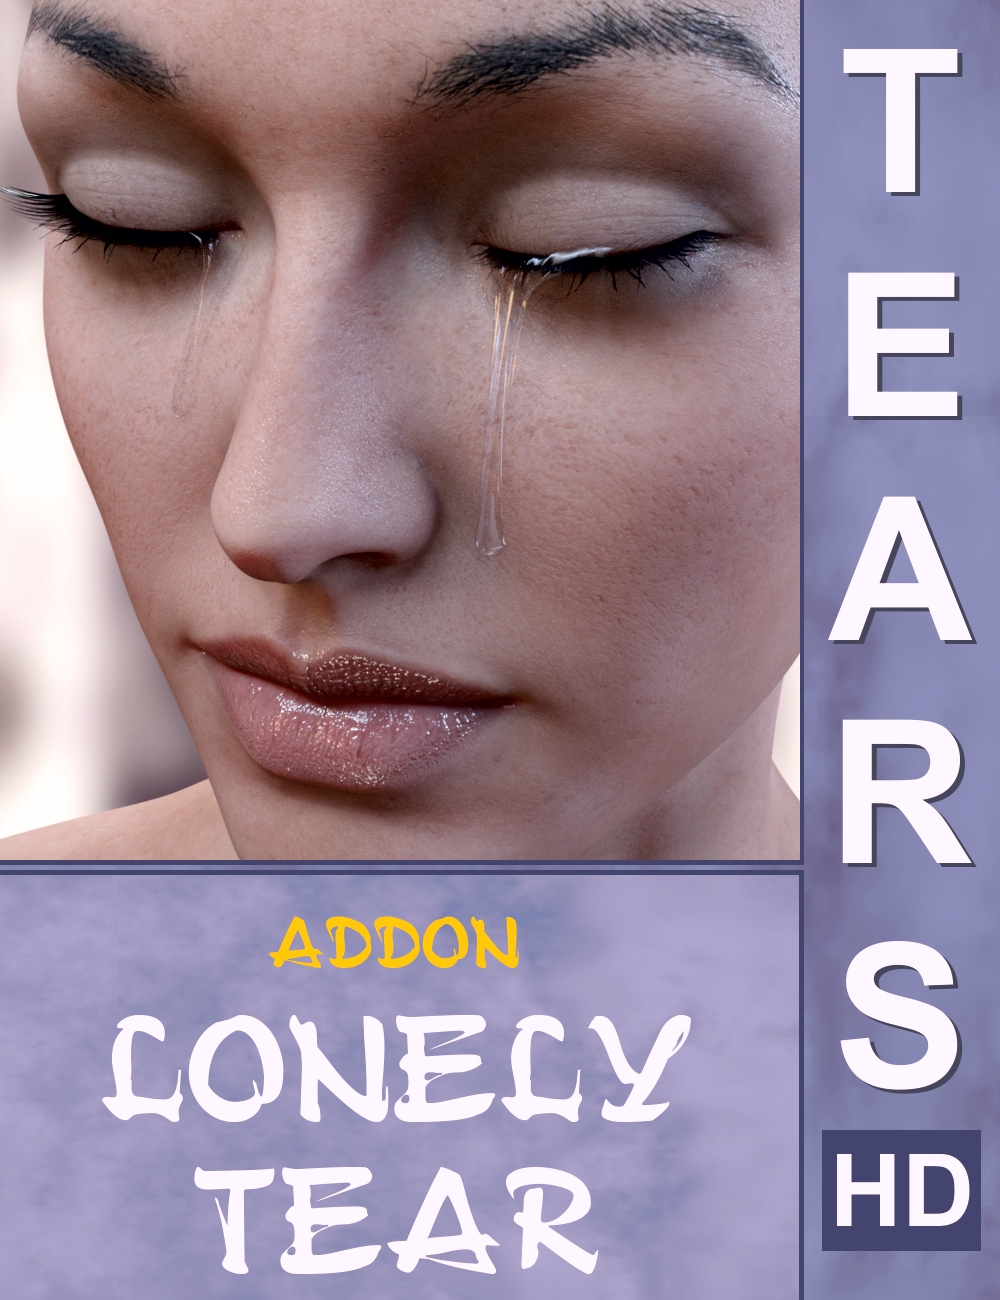 Tears HD Addon Lonely Tear by: AlFan, 3D Models by Daz 3D